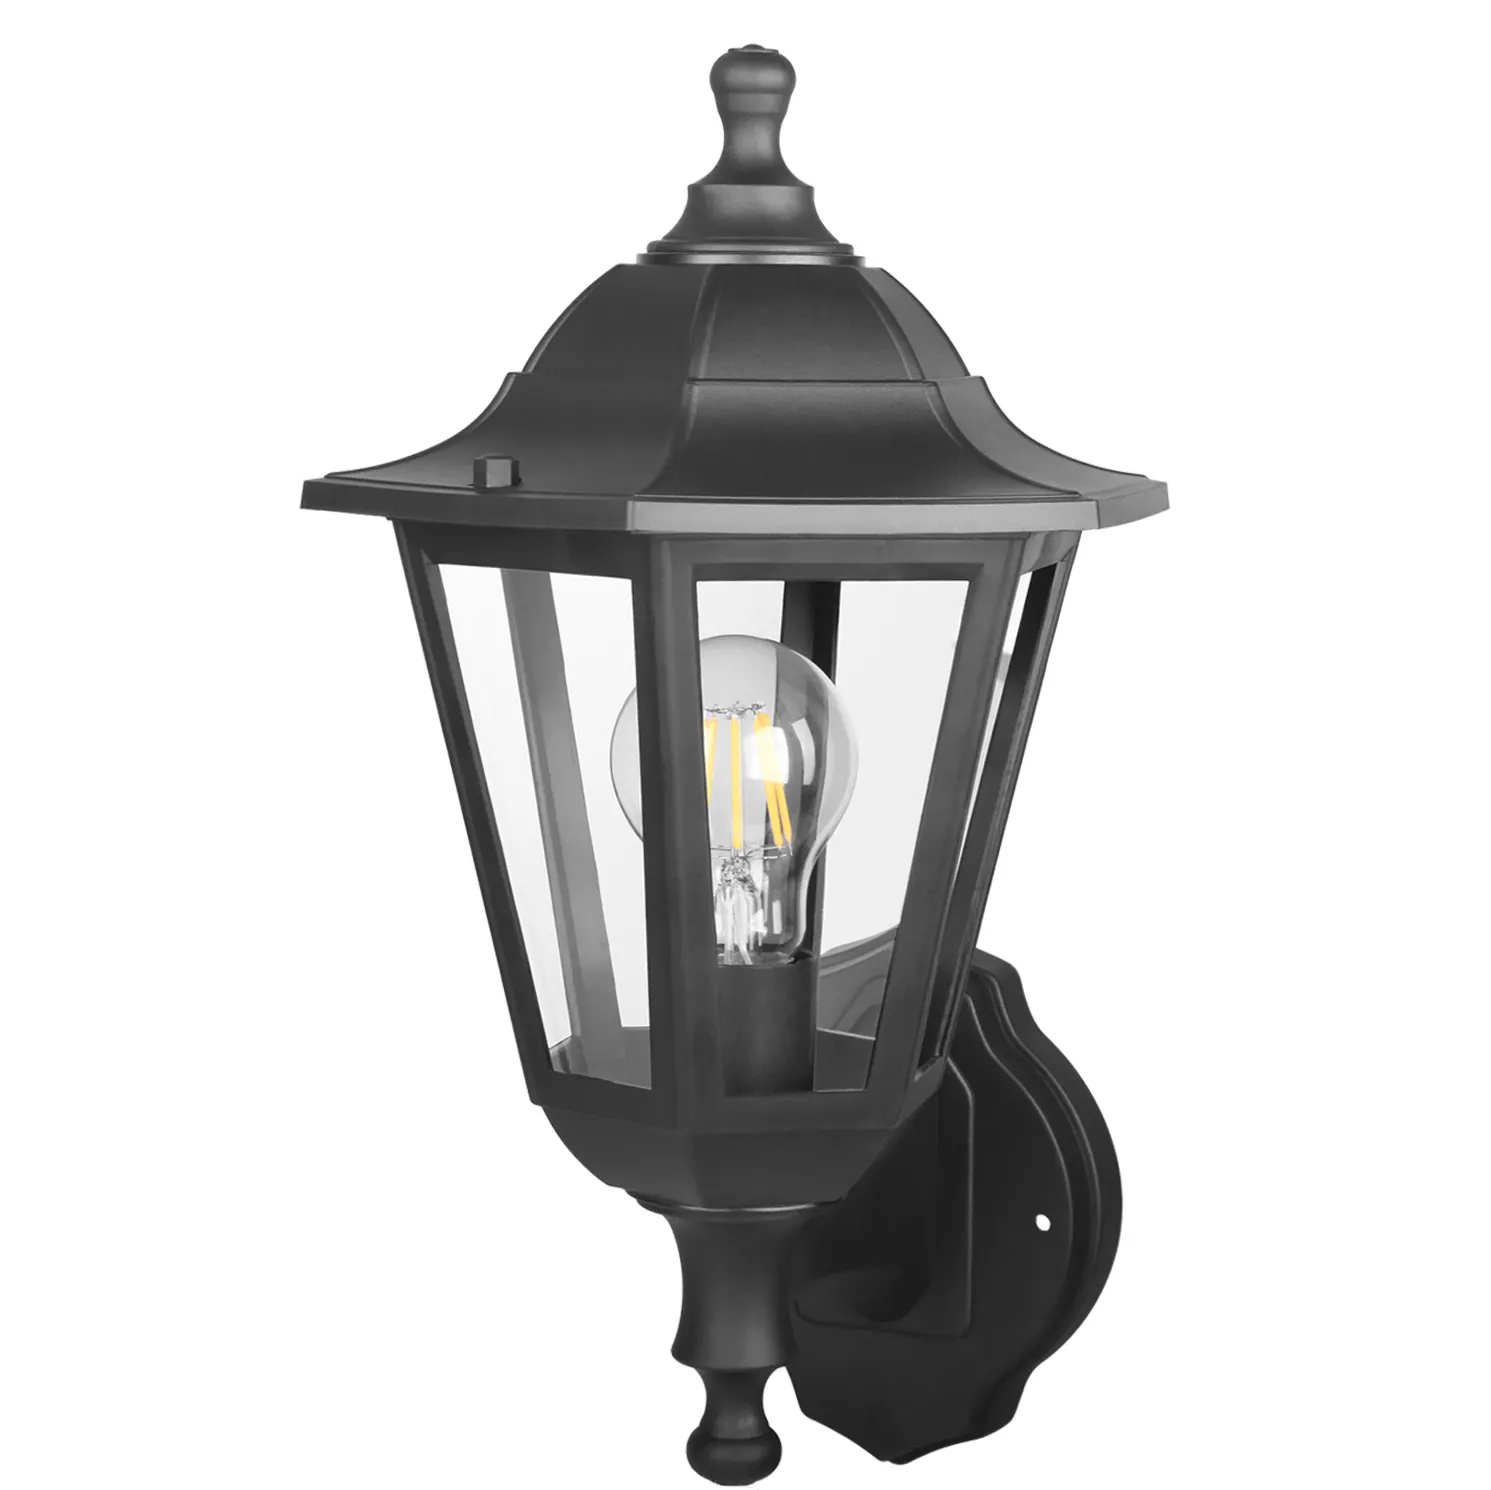 P616 Goedkope Prijs Ip44 Plastic Outdoor Tuin Licht Led Wandlampen Decoratieve Muur Lantaarn Lamp